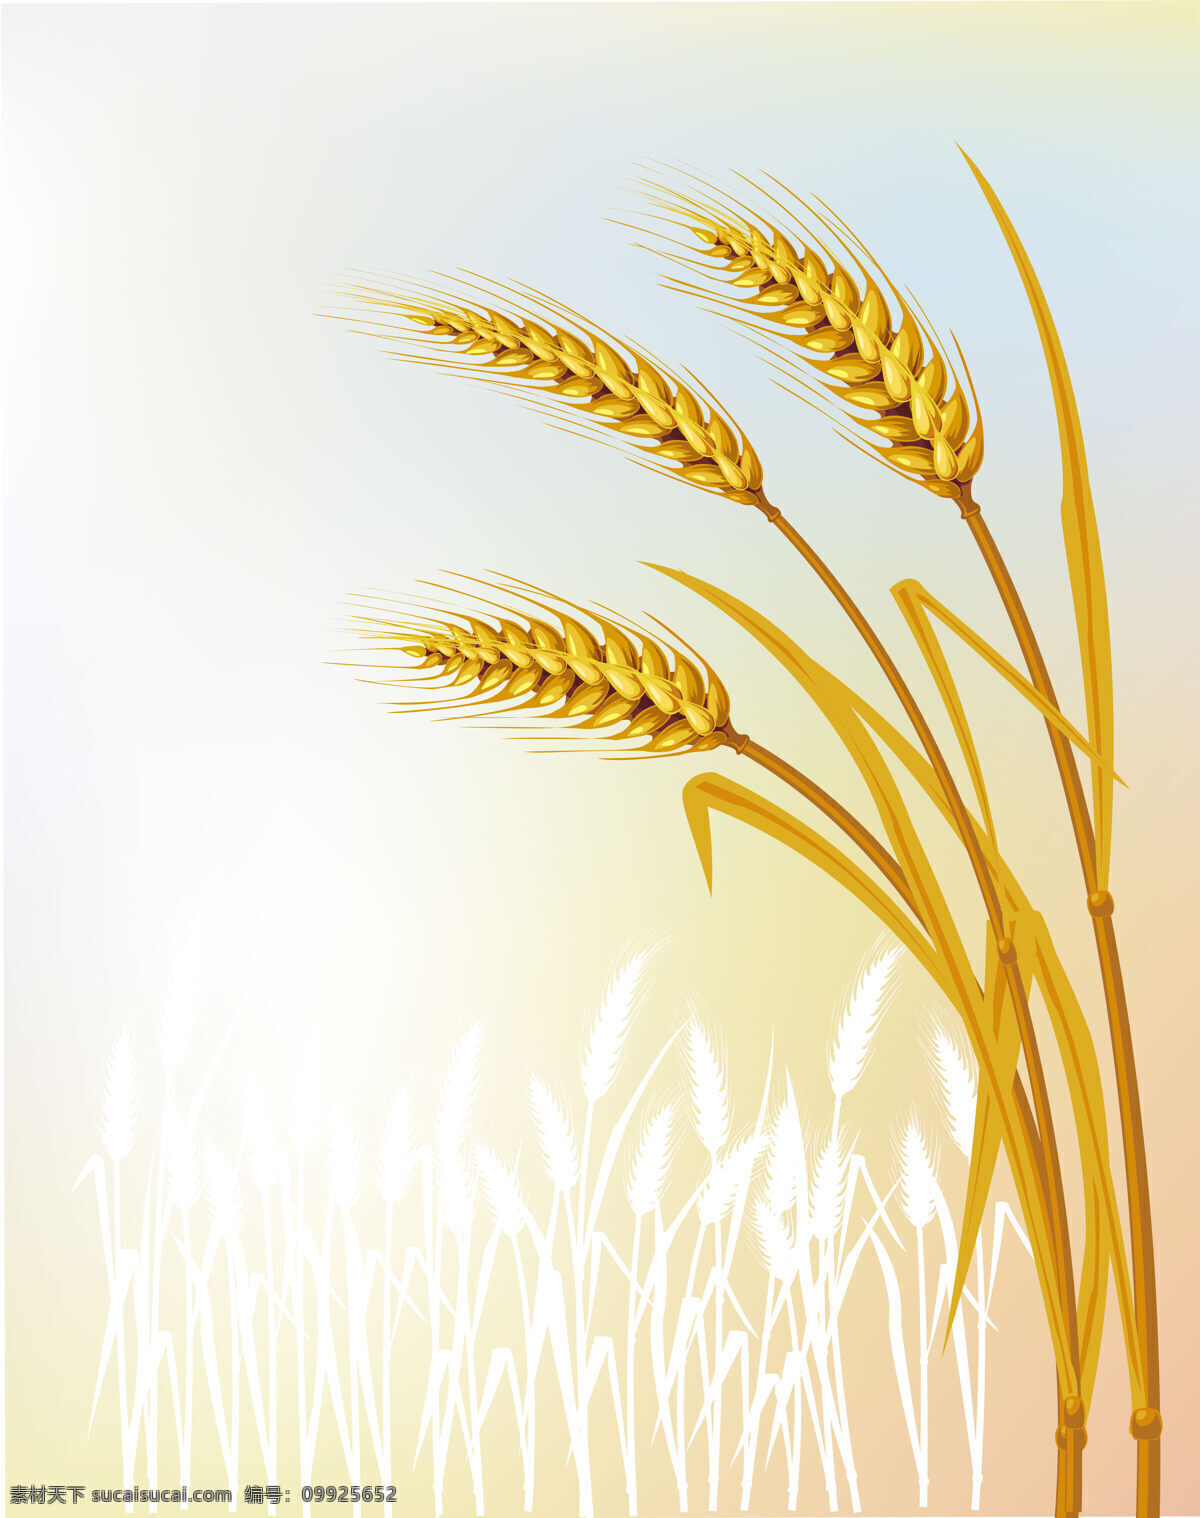 成熟的麦子 麦子 收获 金黄 桌面 唯美 秋天 底纹边框 花边花纹